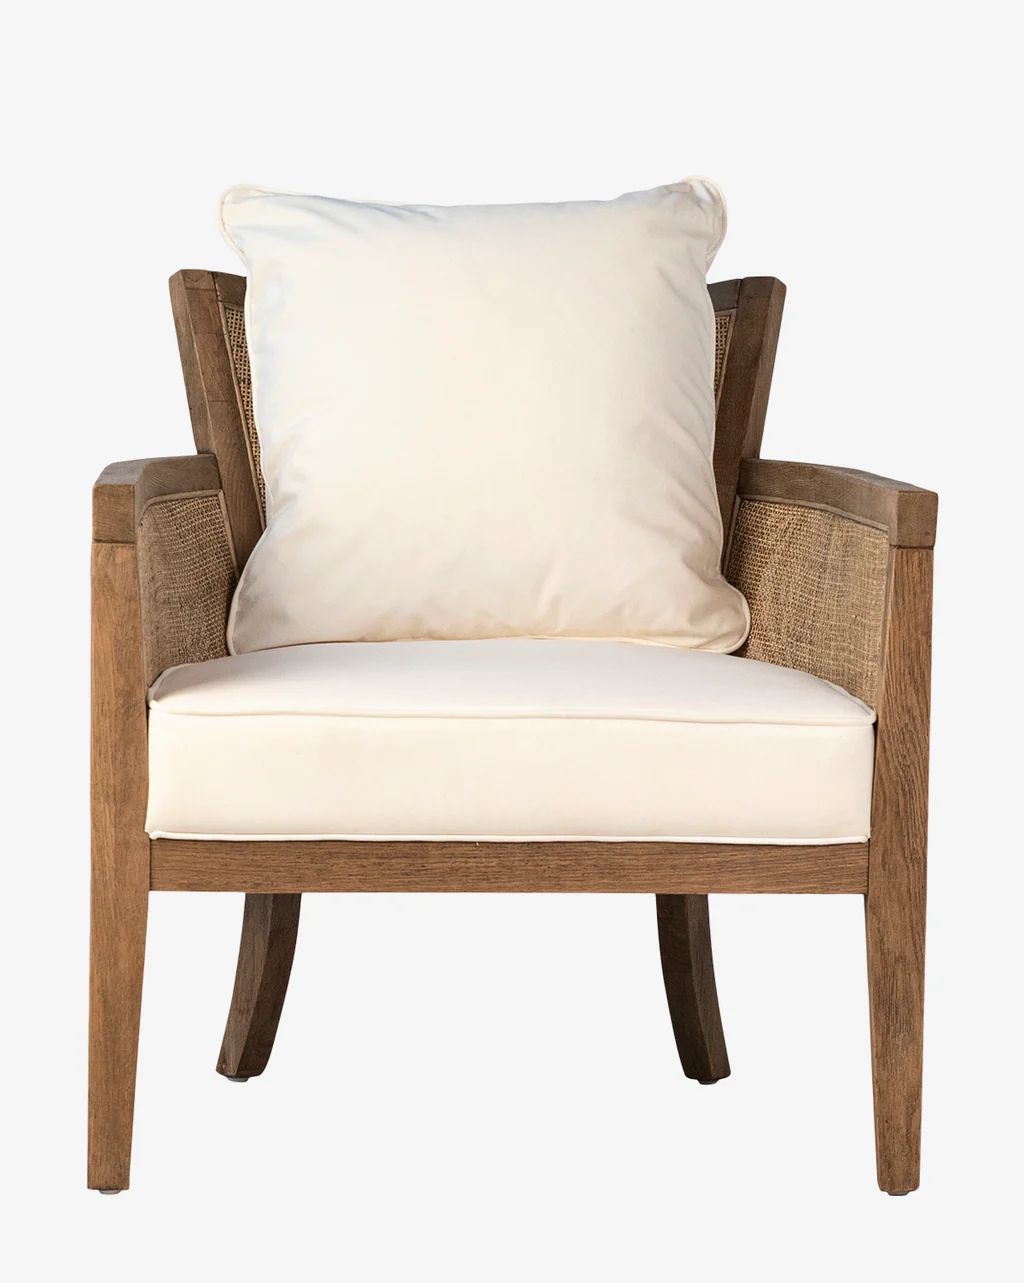 Loya Chair | McGee & Co.